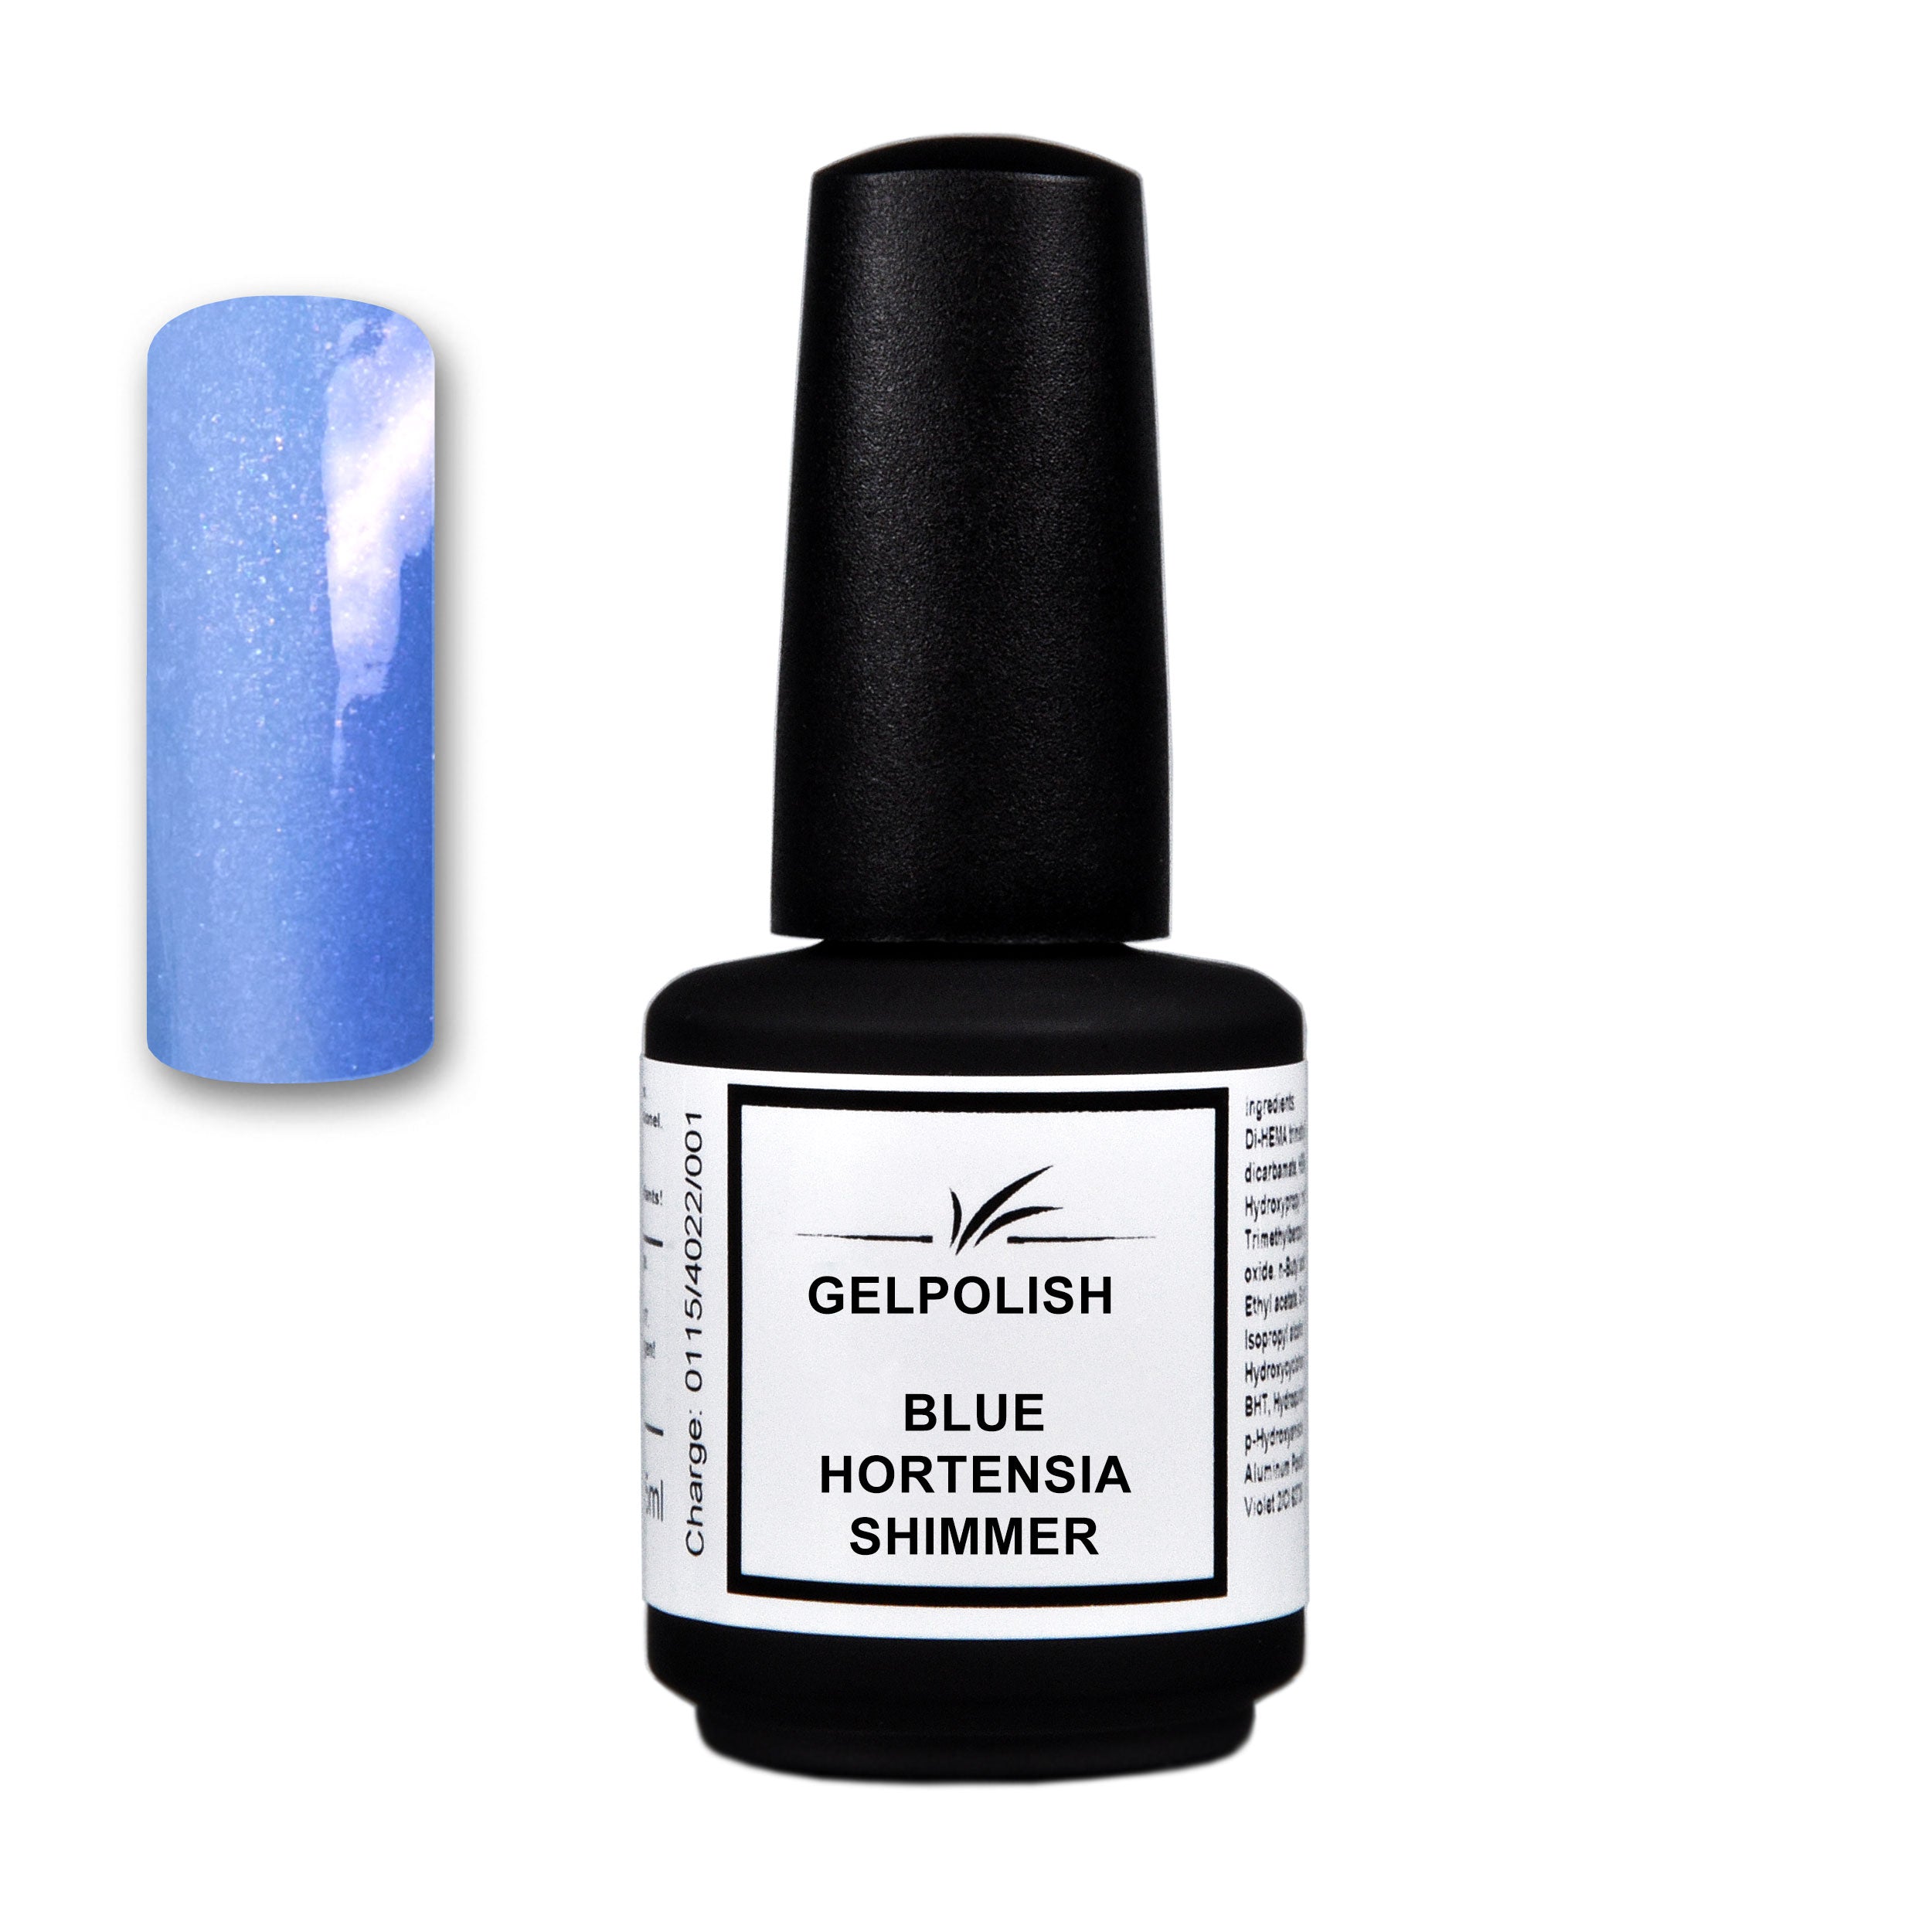 Gelpolish Blue Hortensia Shimmer